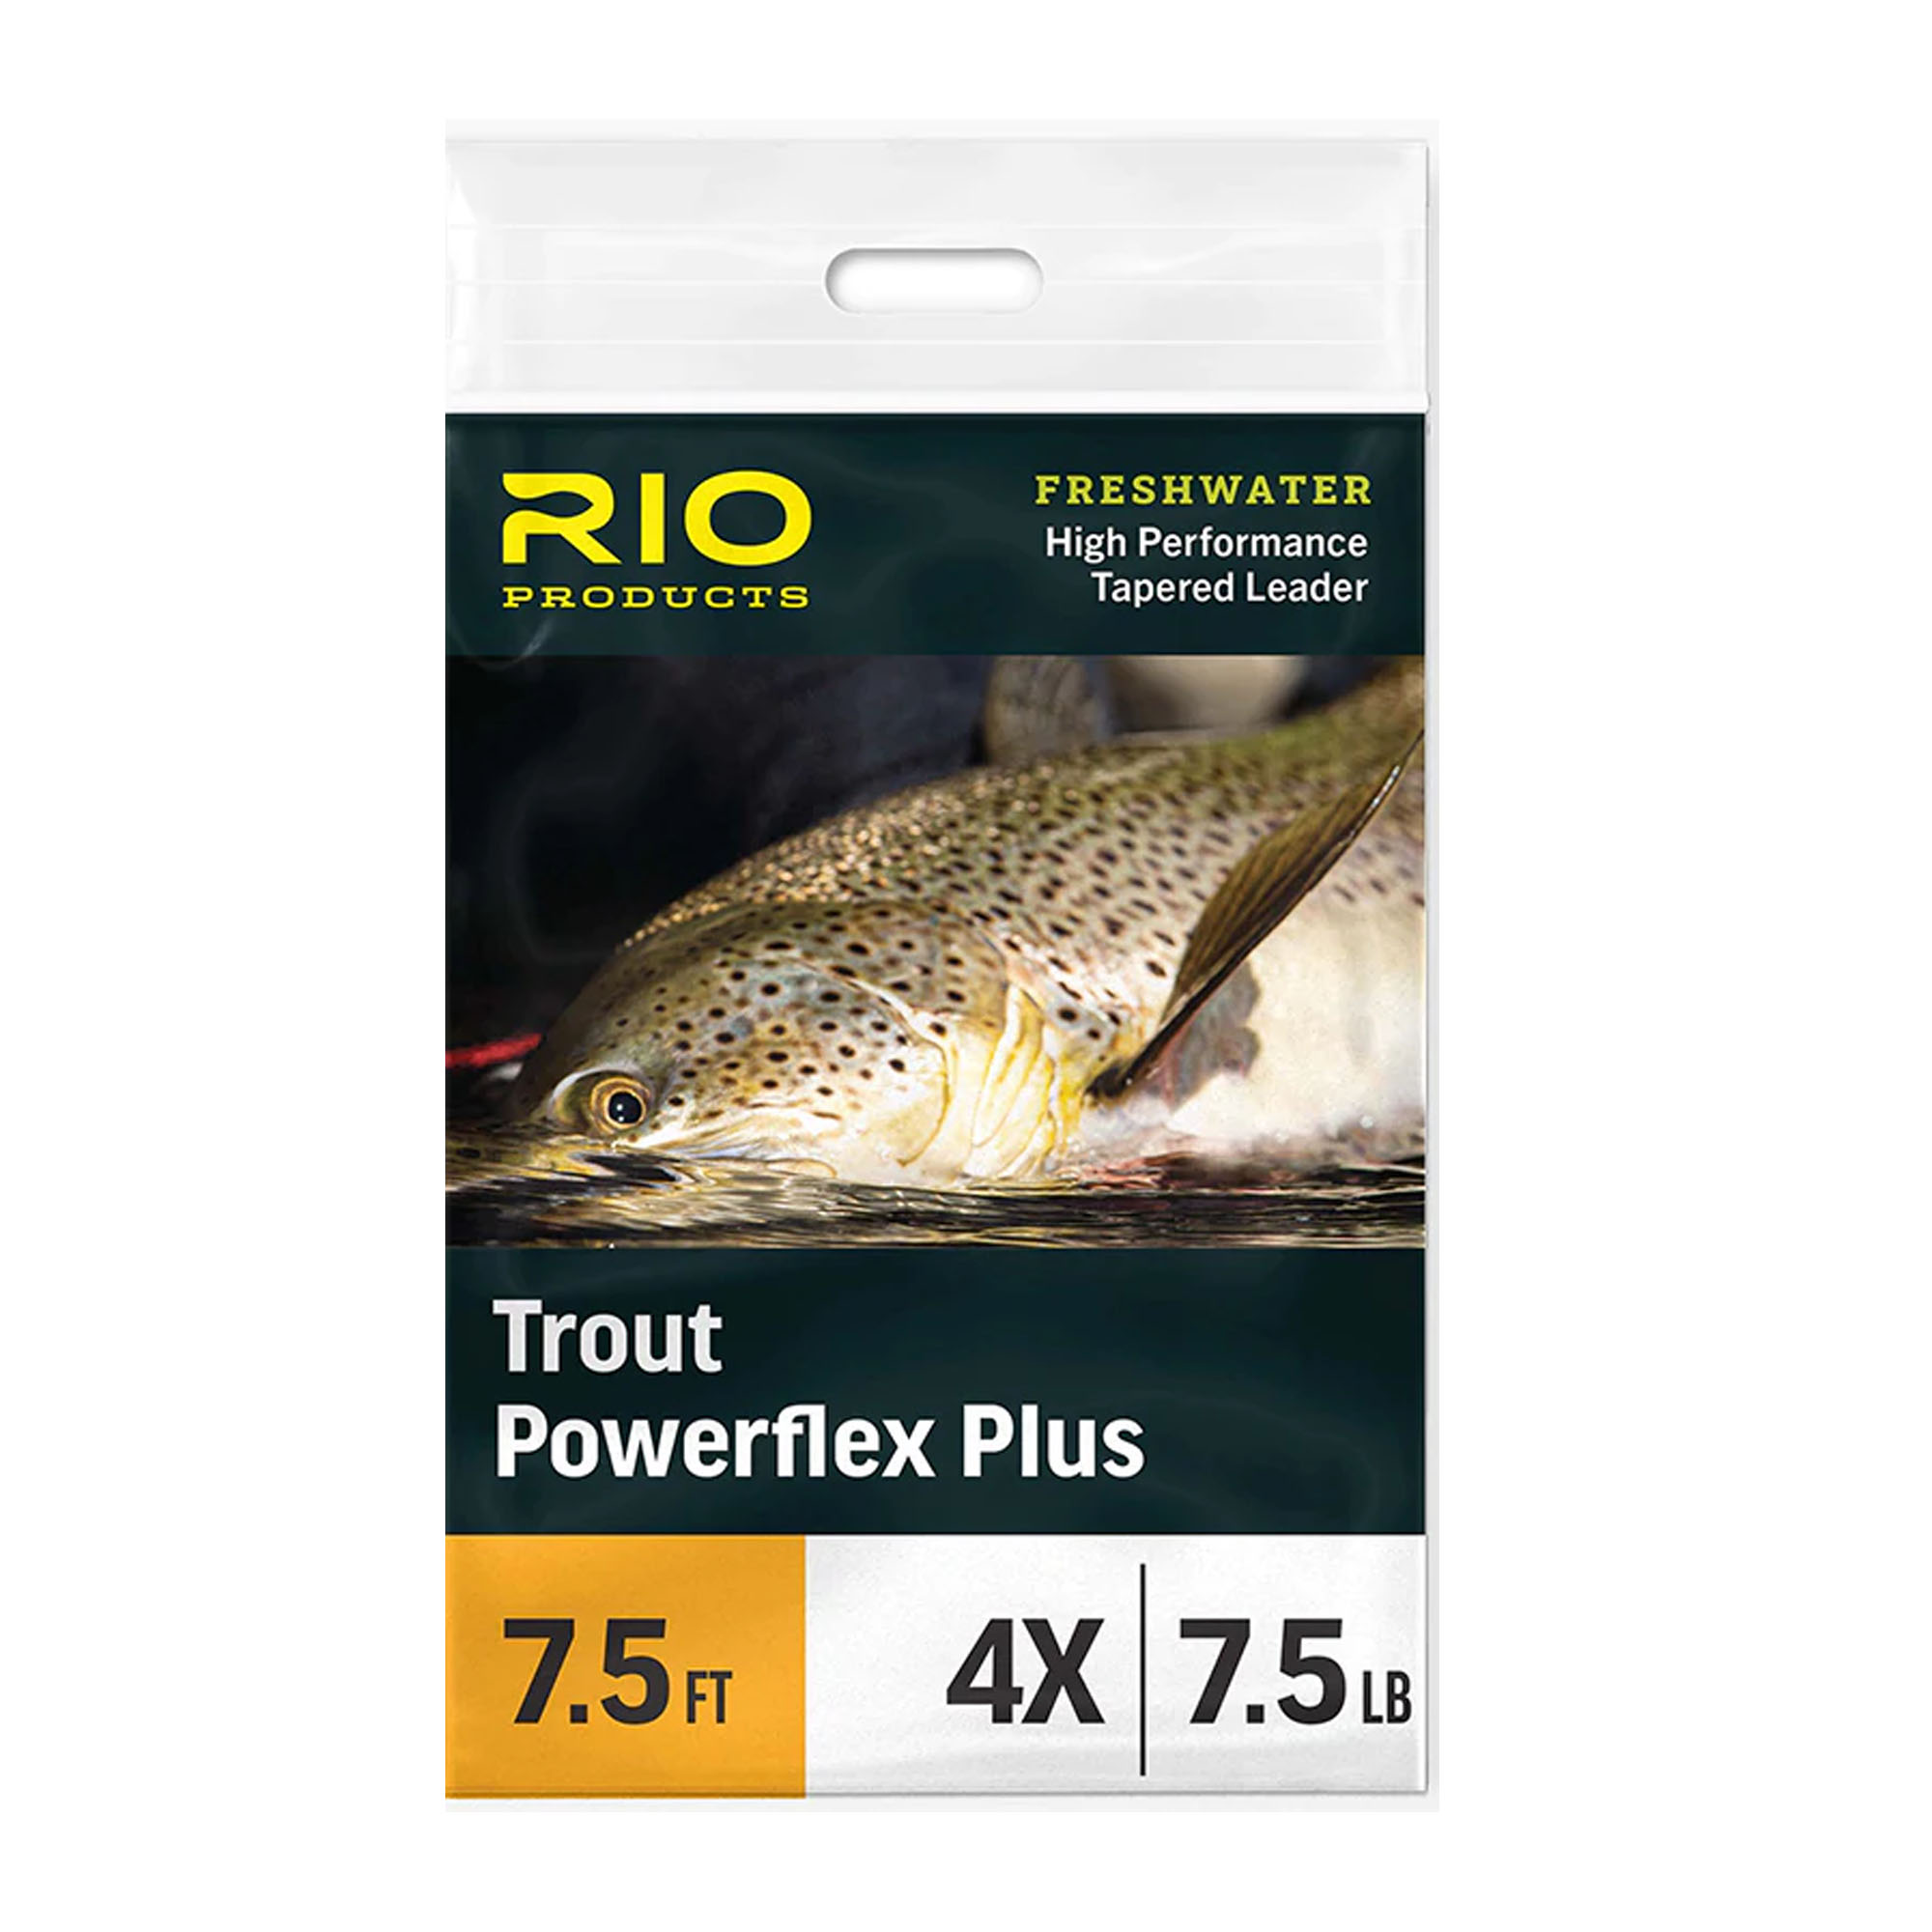 RIO Powerflex Plus Leader – Guide Flyfishing